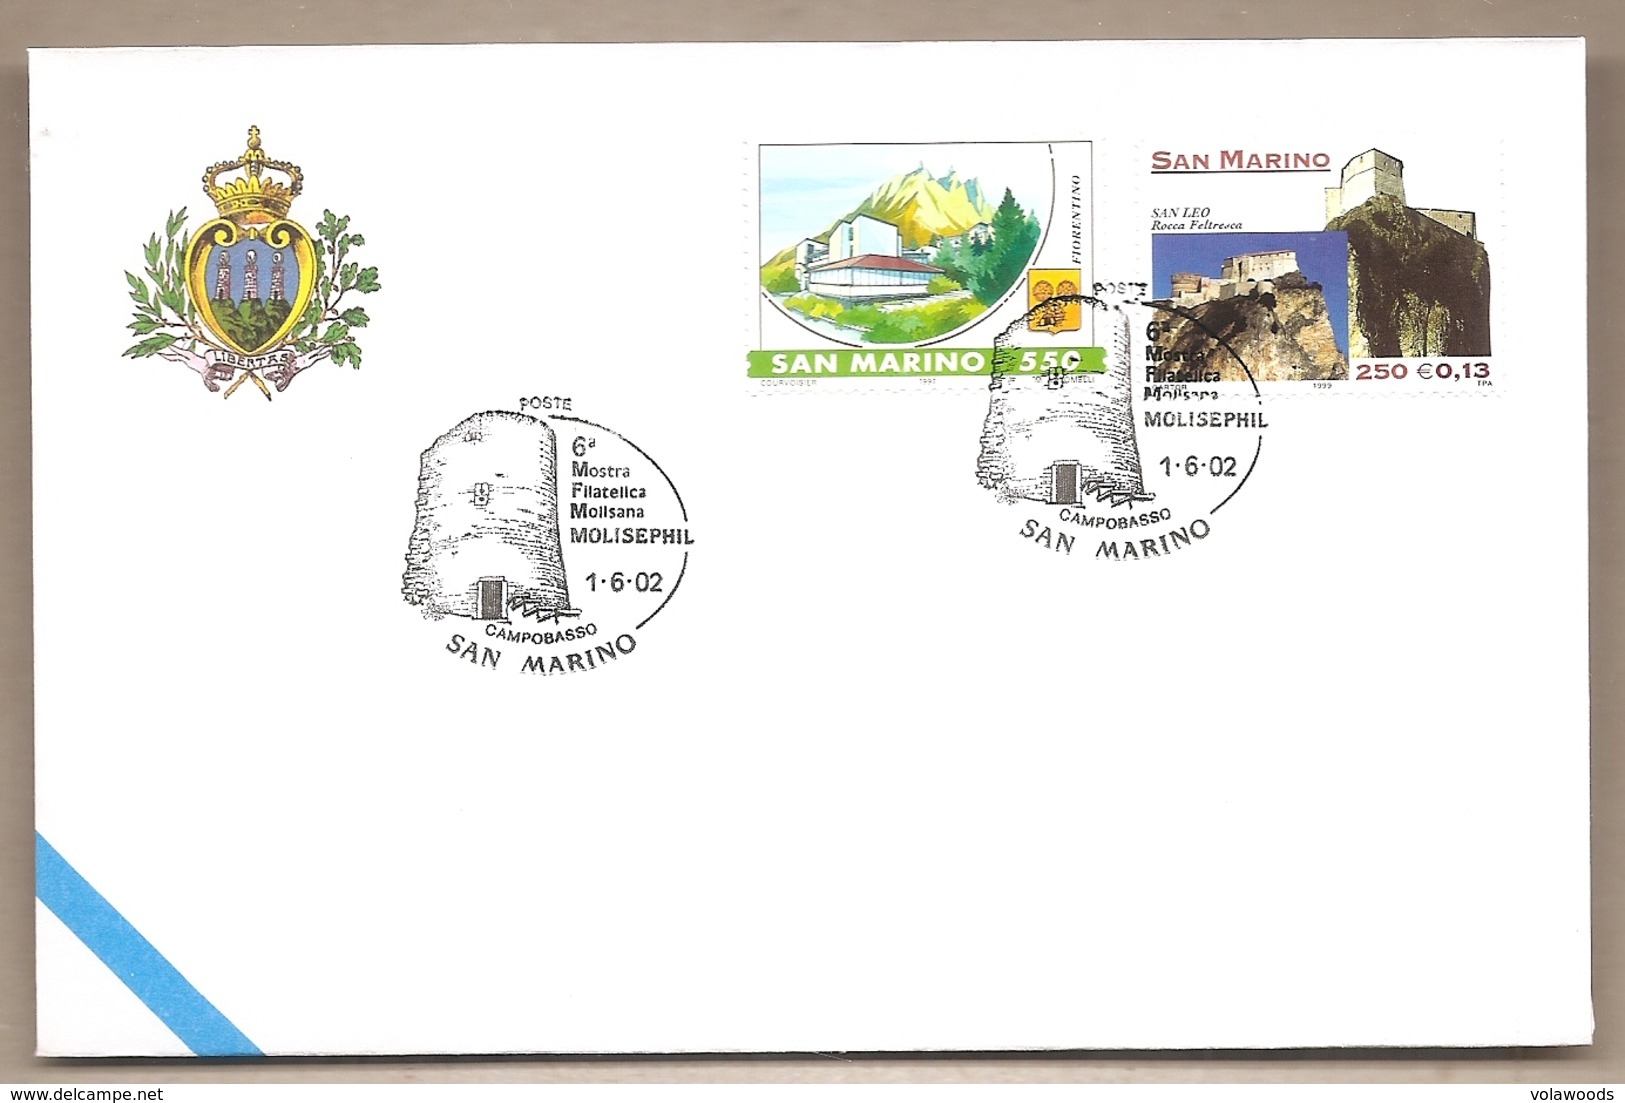 San Marino - Busta Con Annullo Speciale: 6° Mostra Filatelica Molisana - 2002 - Covers & Documents